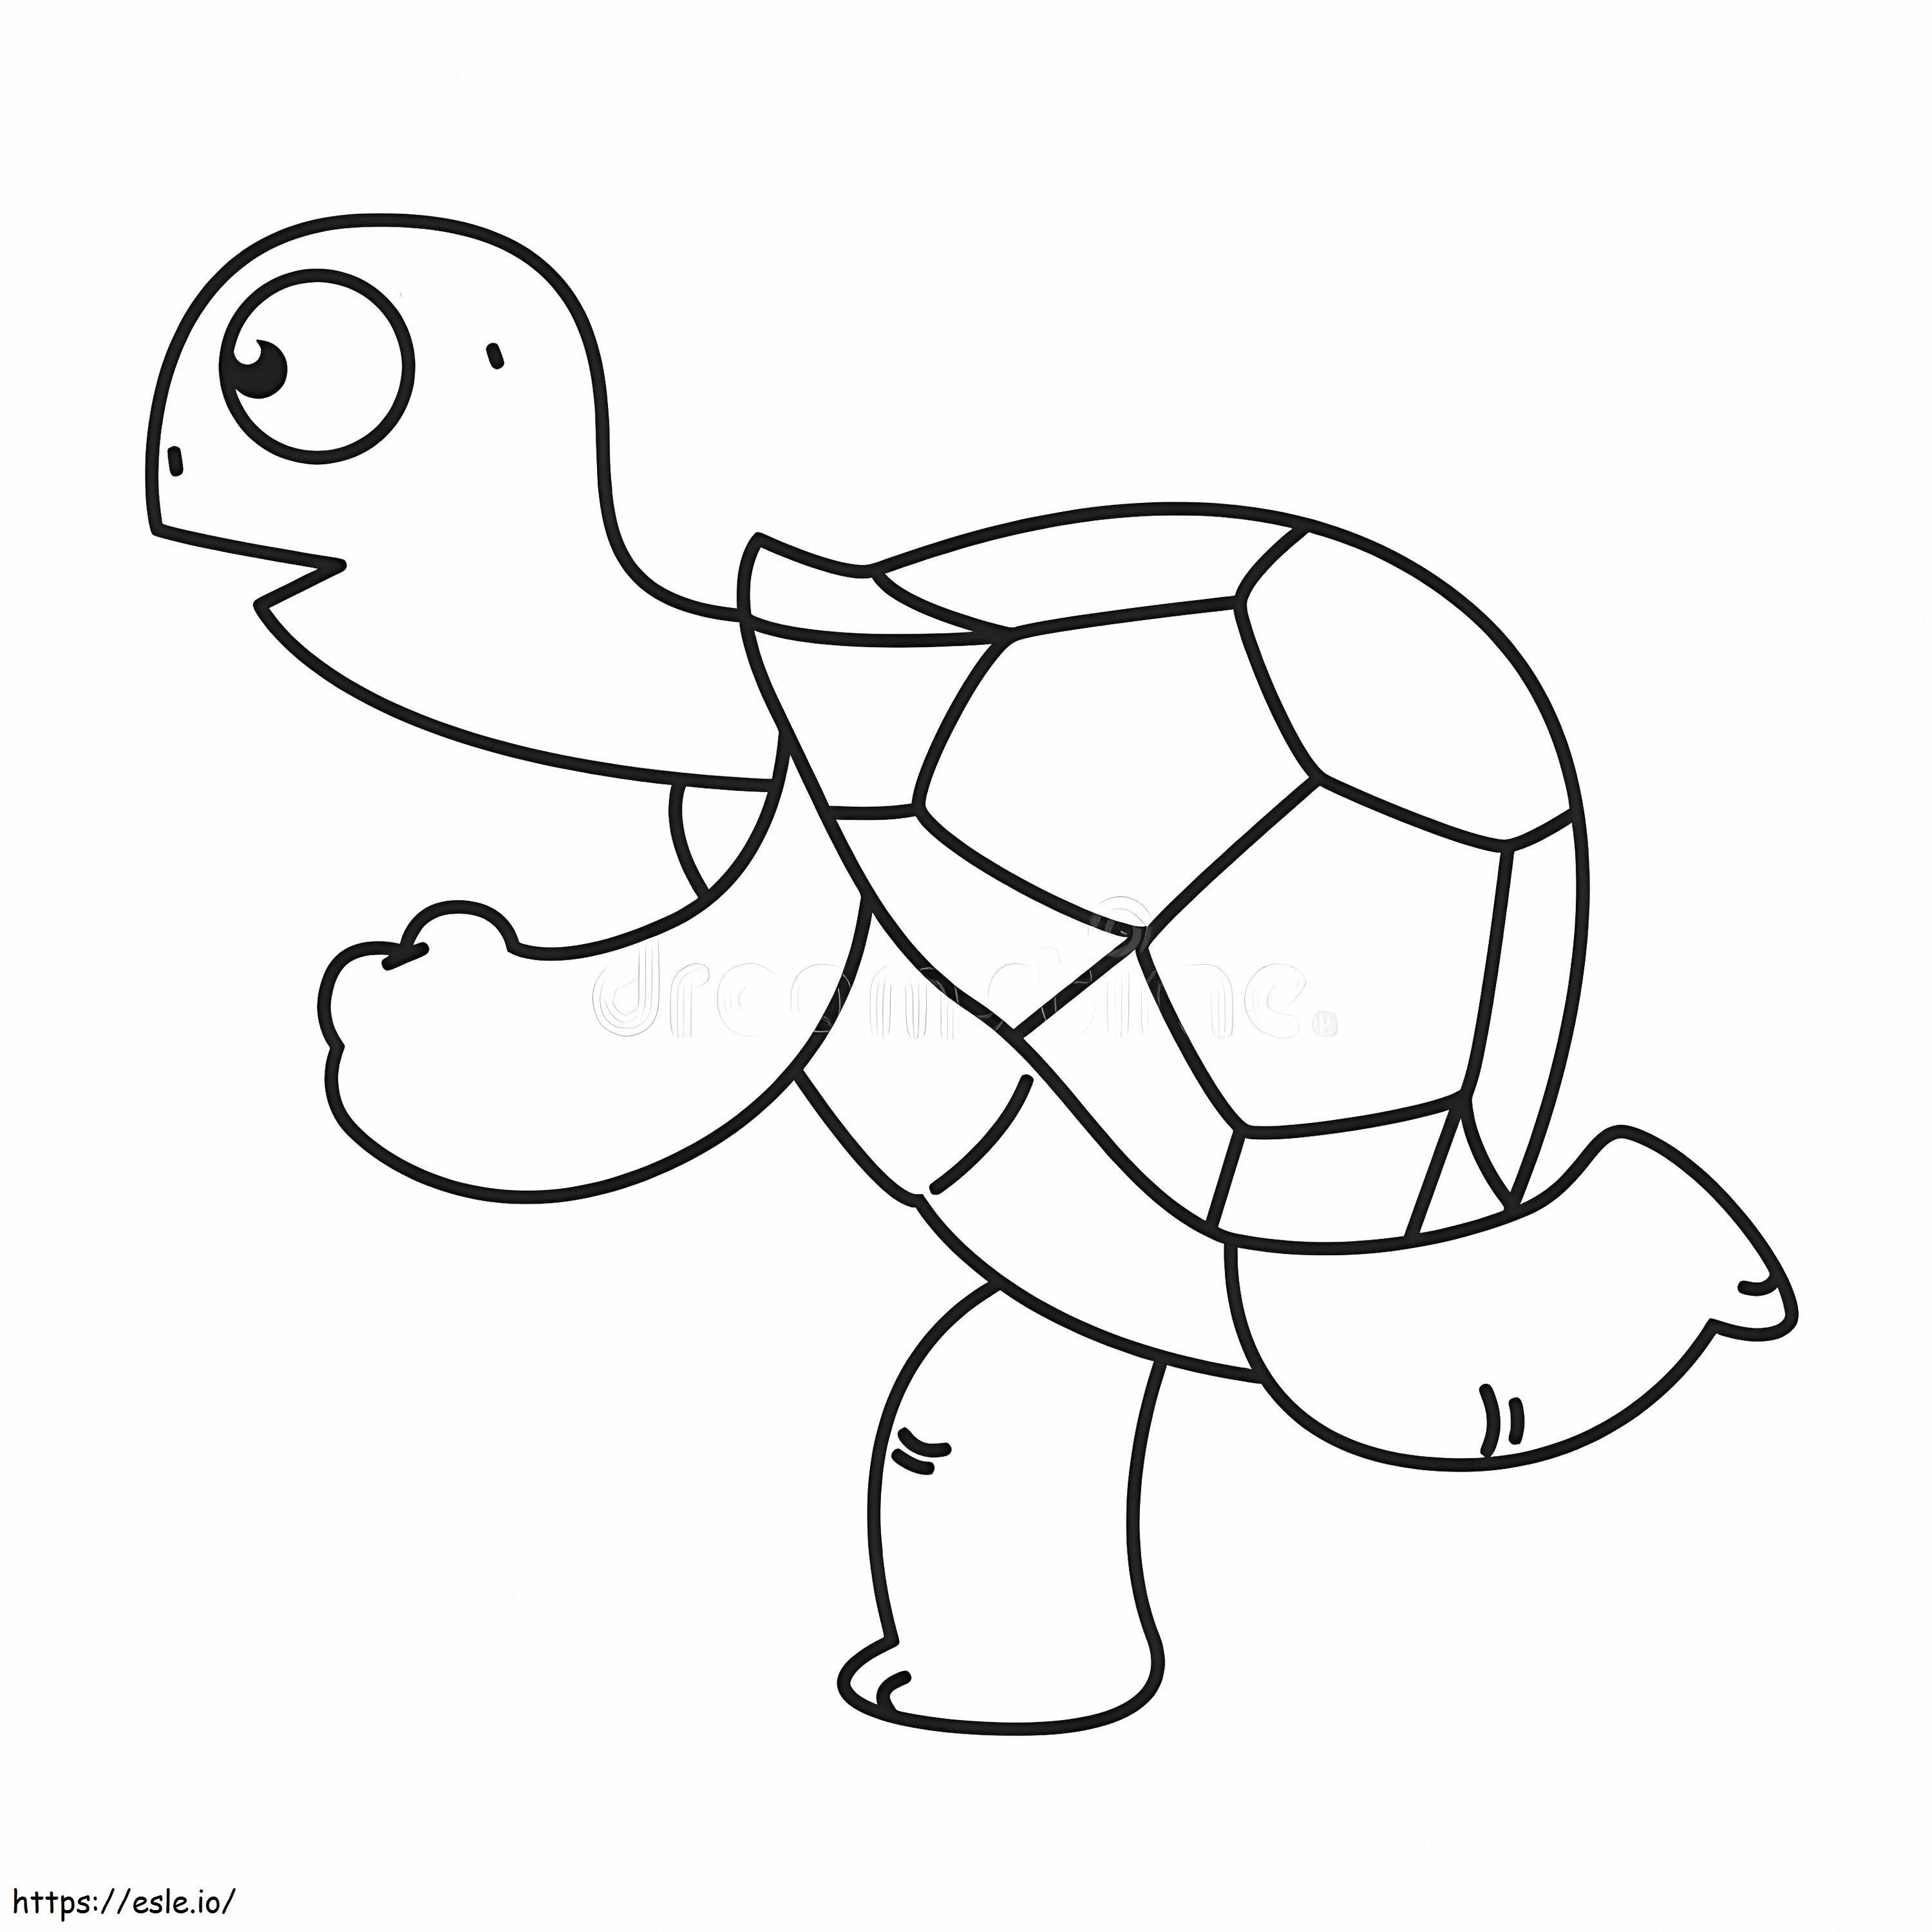 Çalışan kaplumbağa boyama